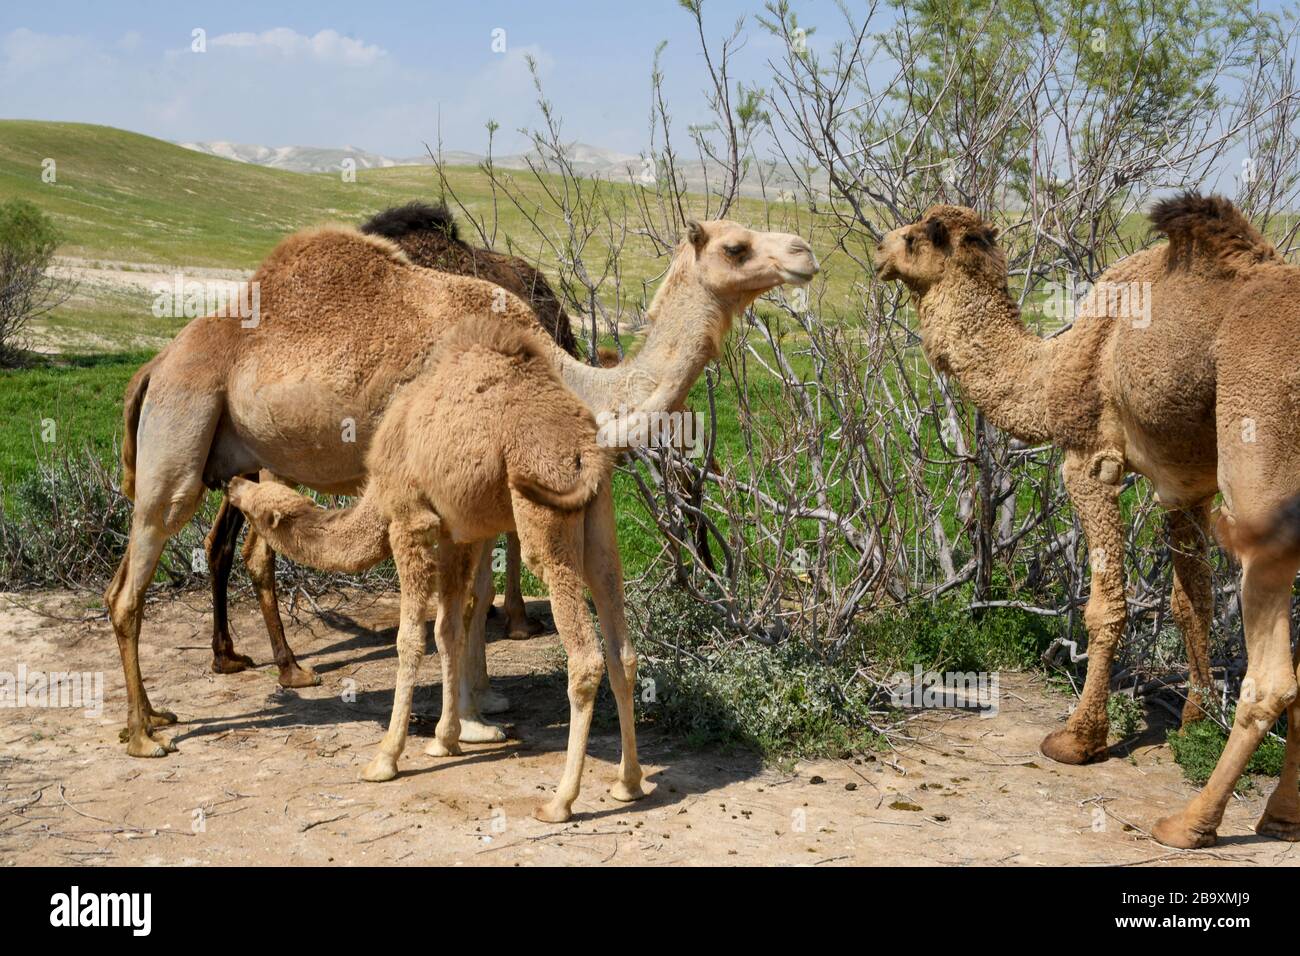 Un cammello arabo femminile (Camelus dromedarius) alimenta la sua nuova prole nata. Fotografata valle di Kidron, deserto della Giudea, Cisgiordania Palestina Israele in M Foto Stock